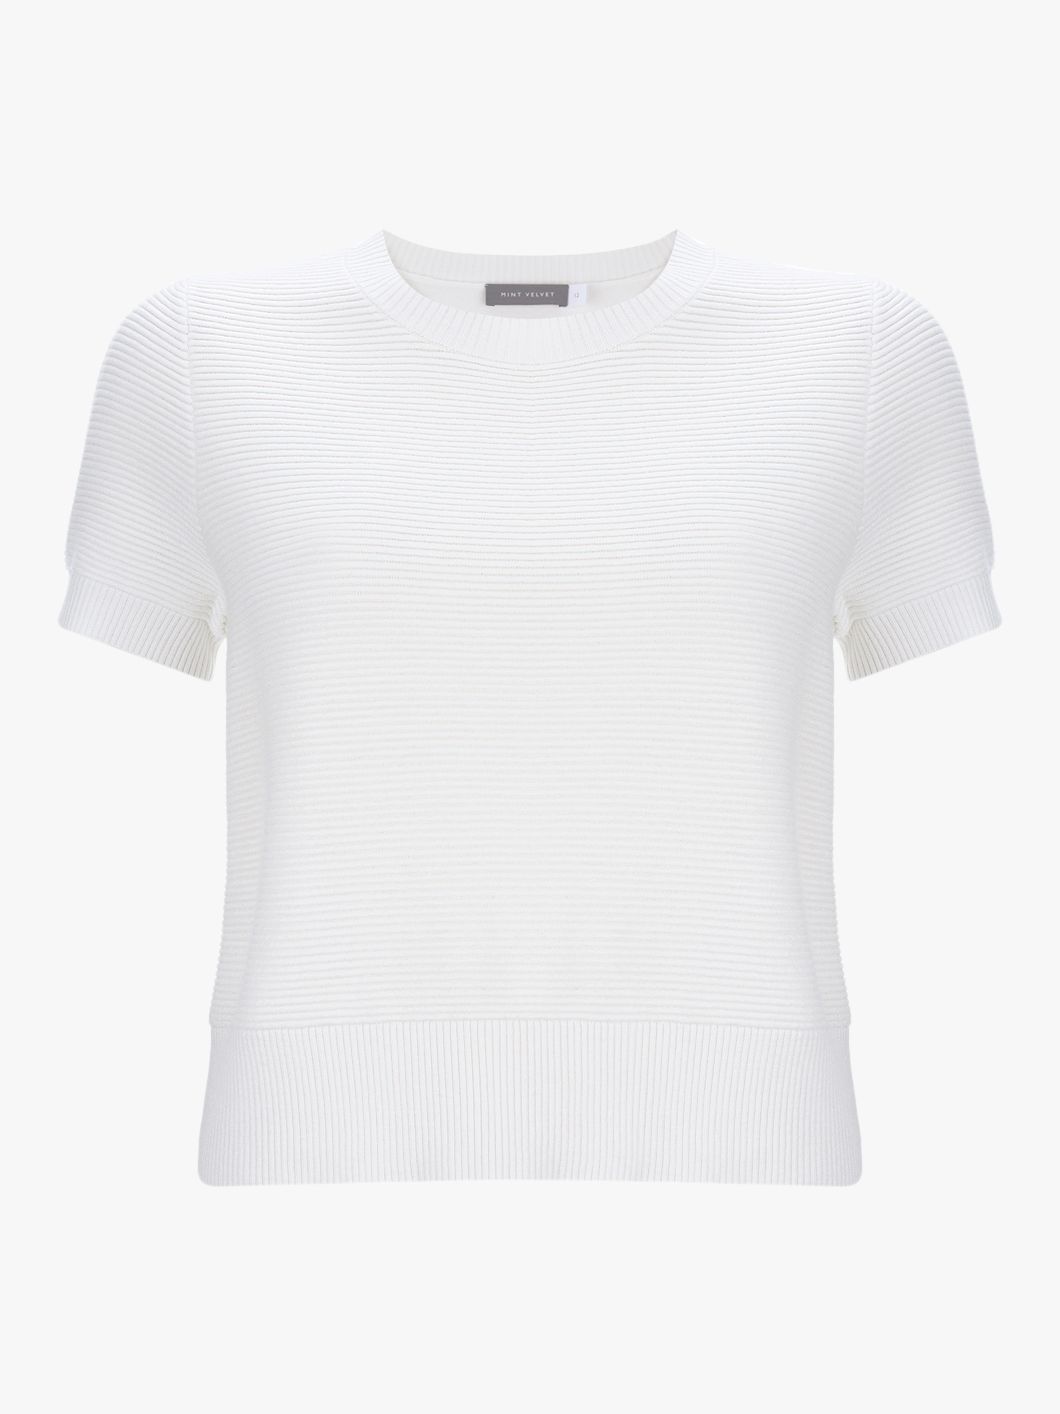 Mint Velvet Textured Knit T-Shirt, Ivory